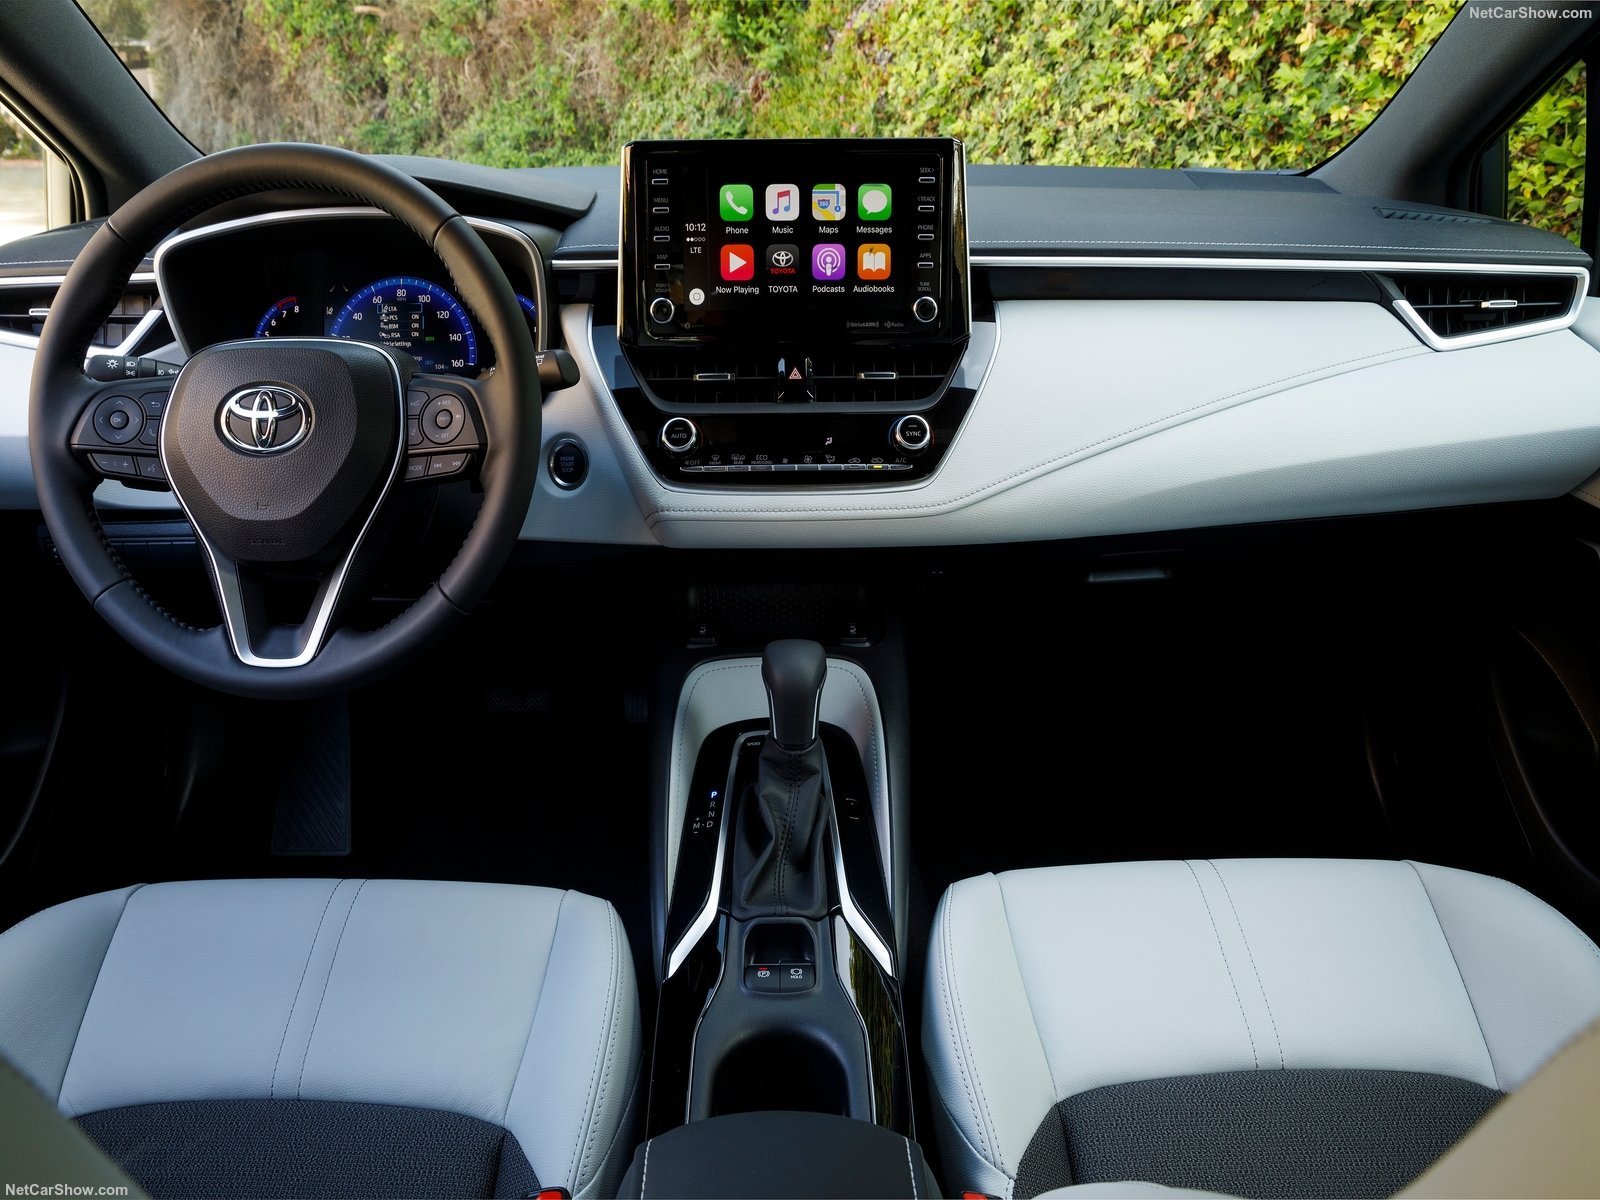  Toyota Corolla Hatchback é equipado com sistema que pode evitar colisão com outros veículos, ciclistas e até pedestres